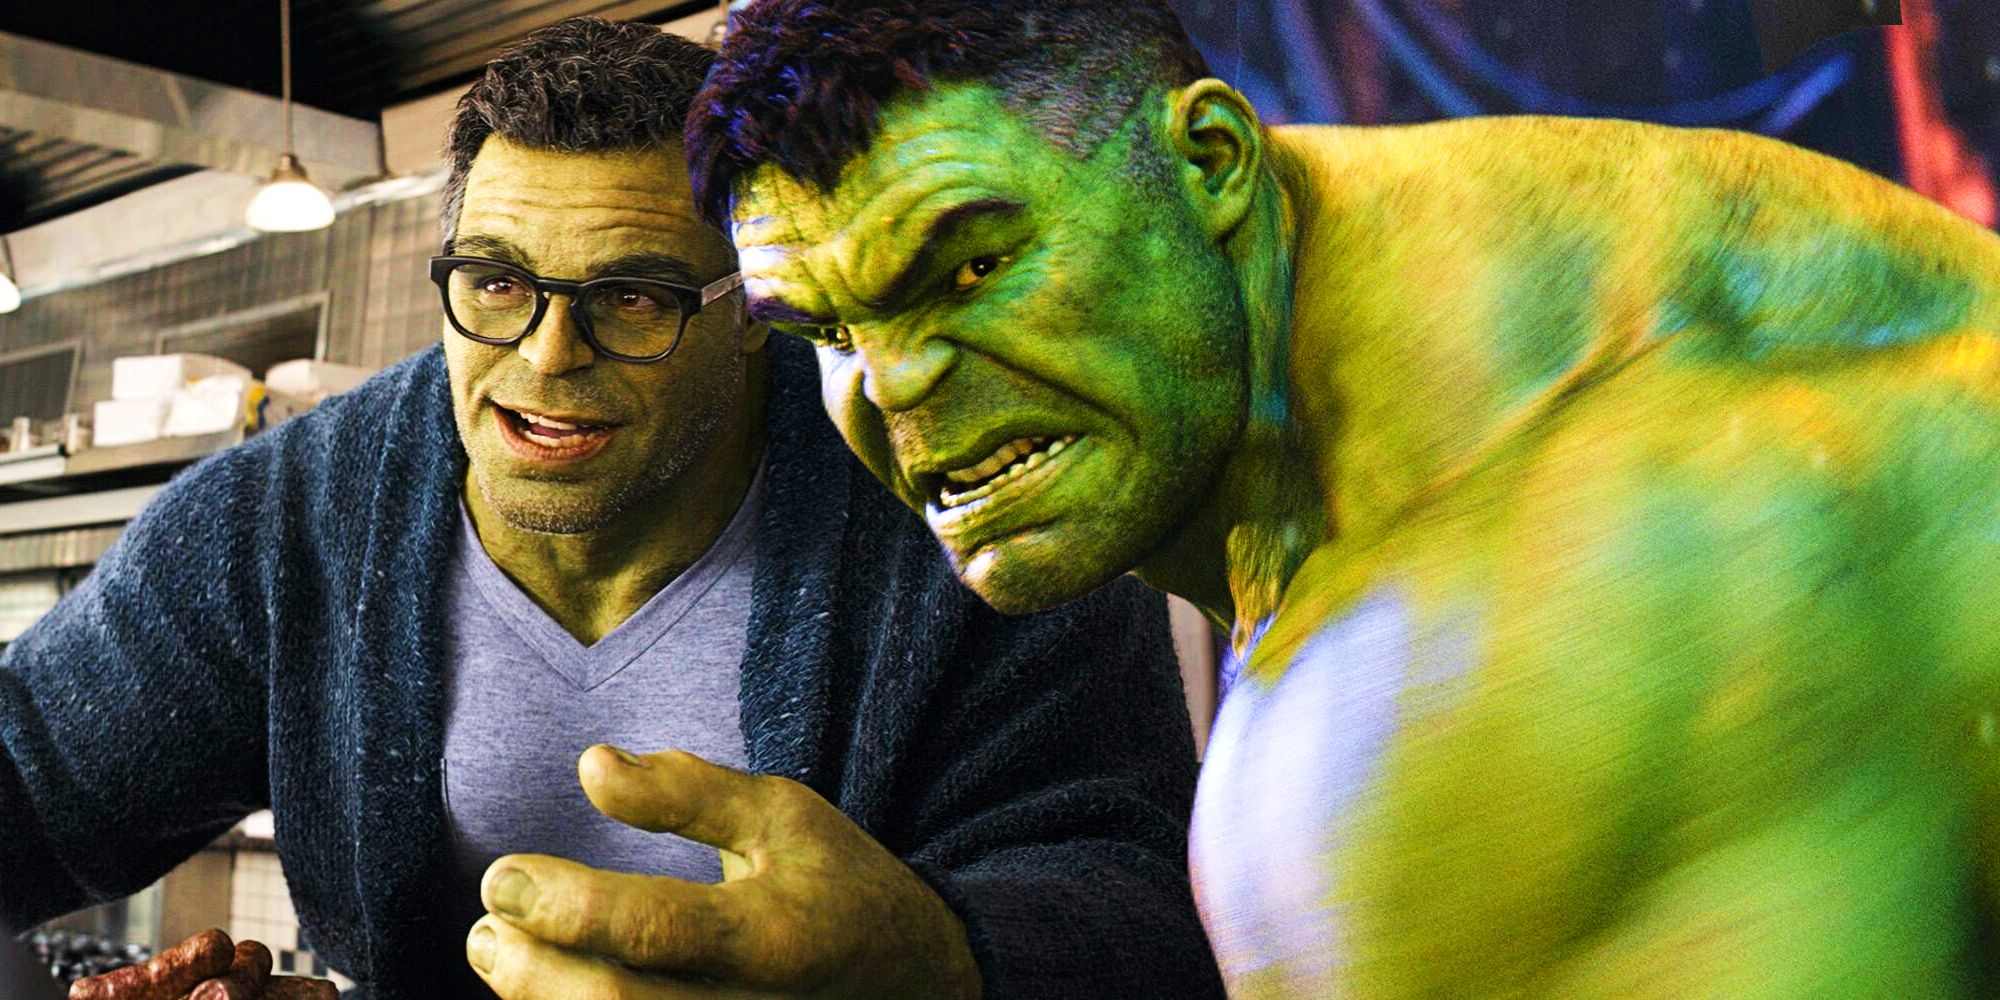 The Hulk in Avengers Endgame and Avengers Infity War